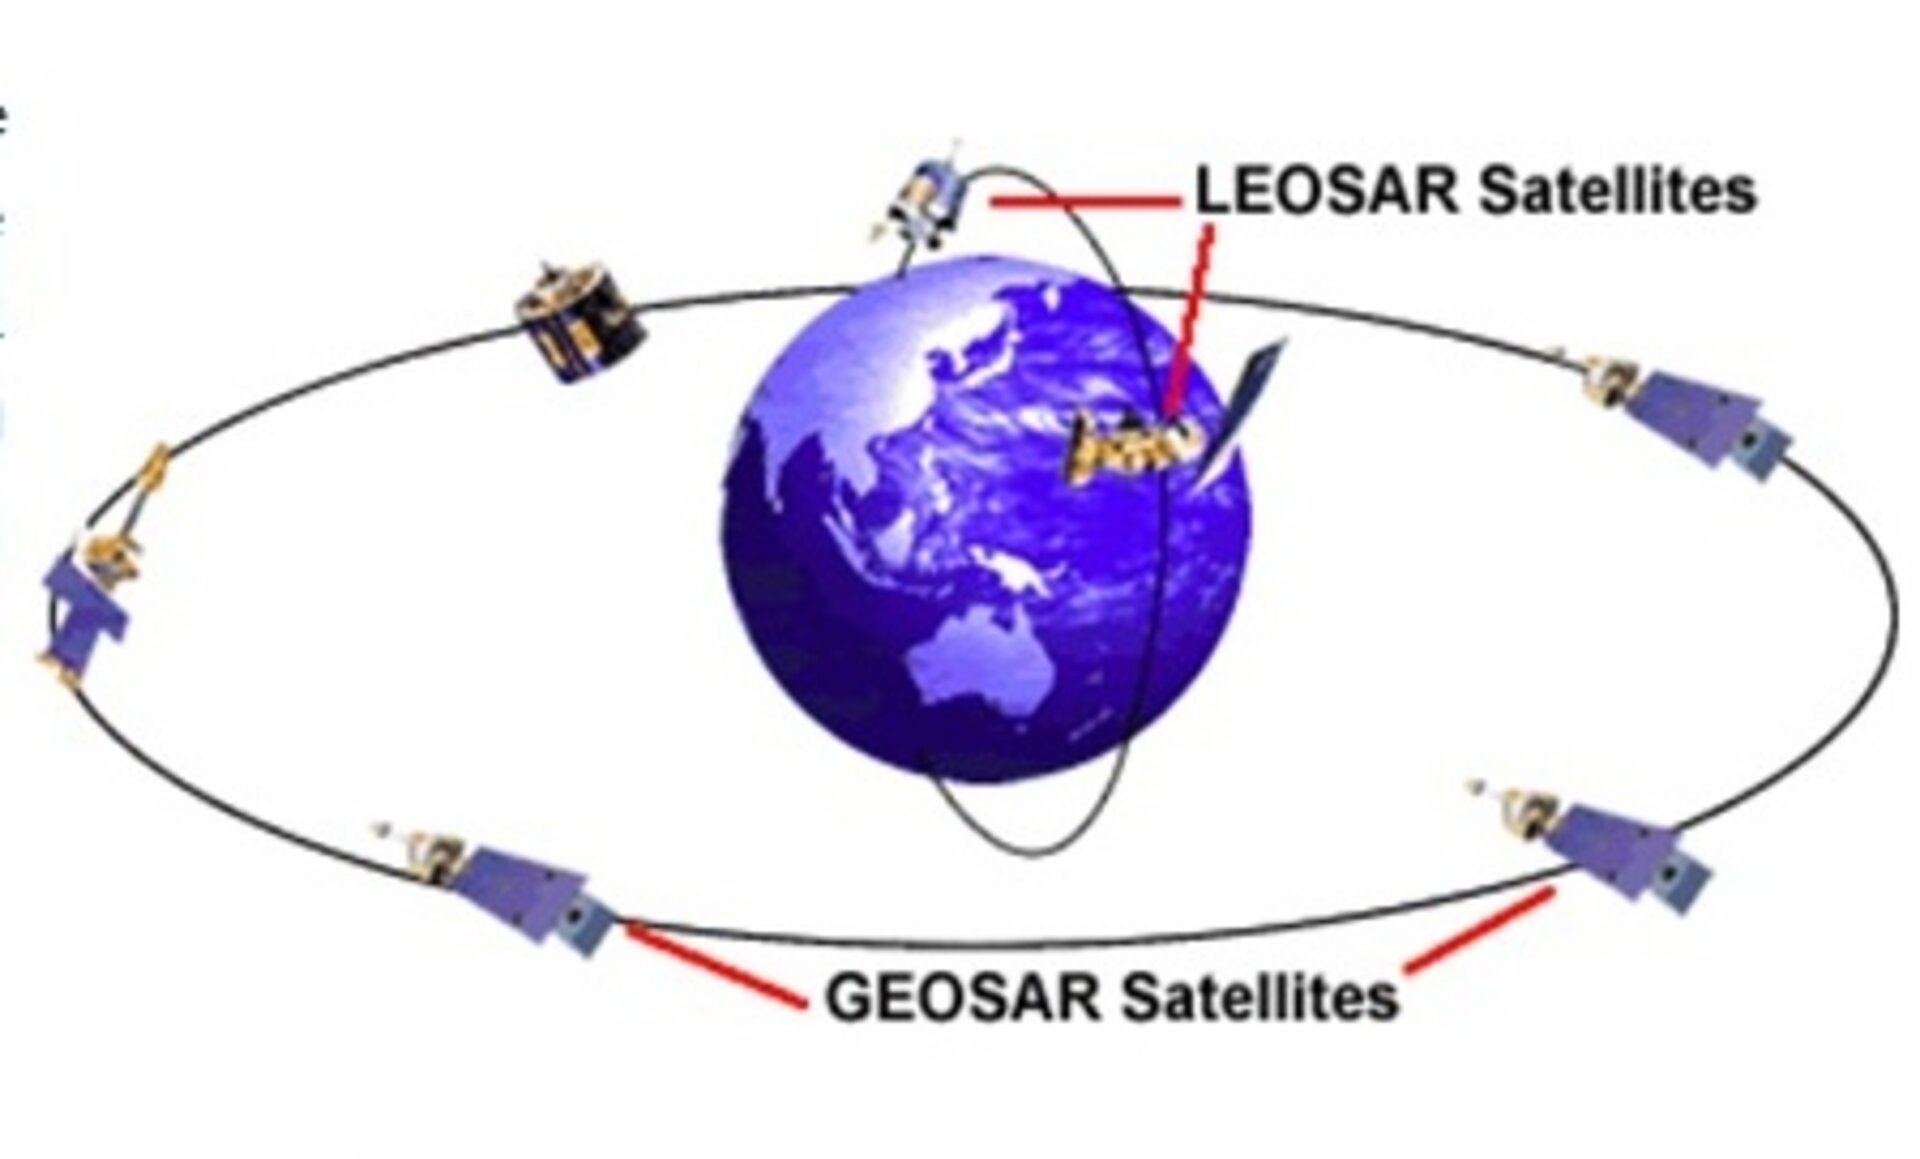 'LEOSAR' and 'GEOSAR' satellites